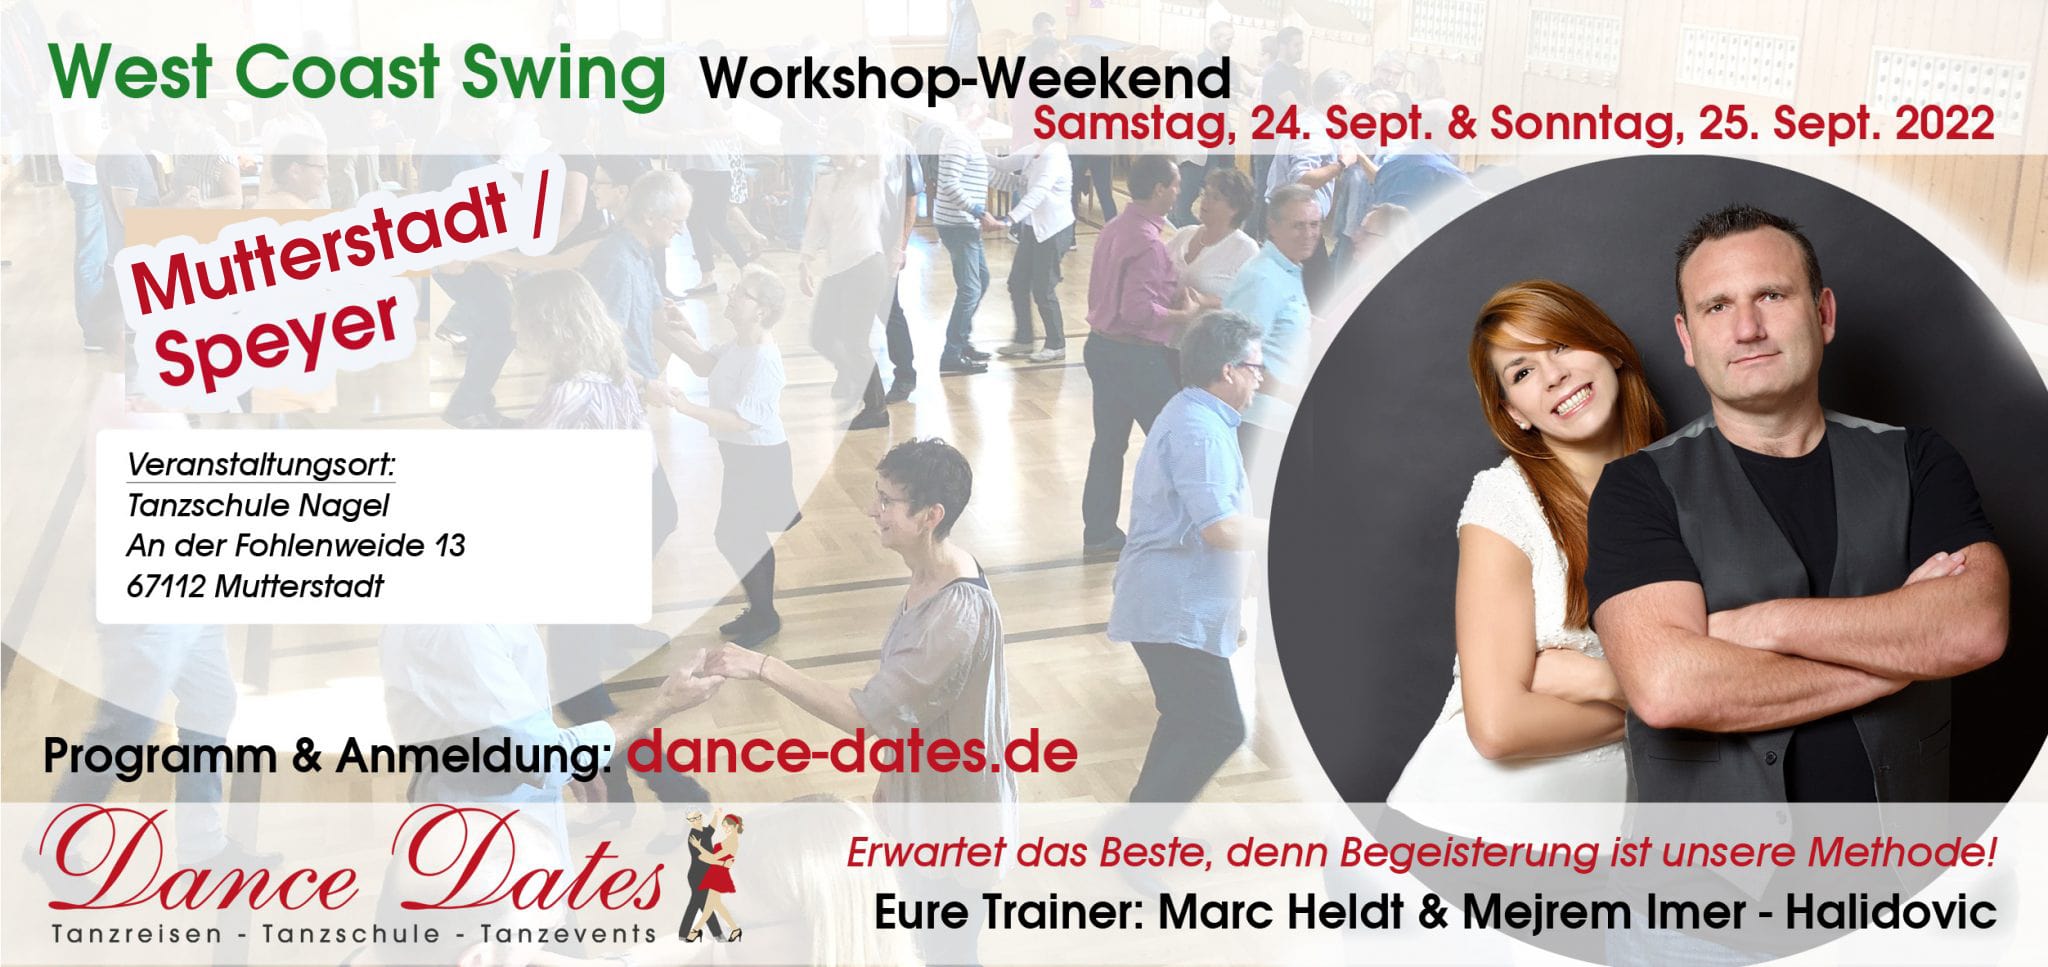 West Coast Swing Workshop-Weekend in Mutterstadt / Speyer